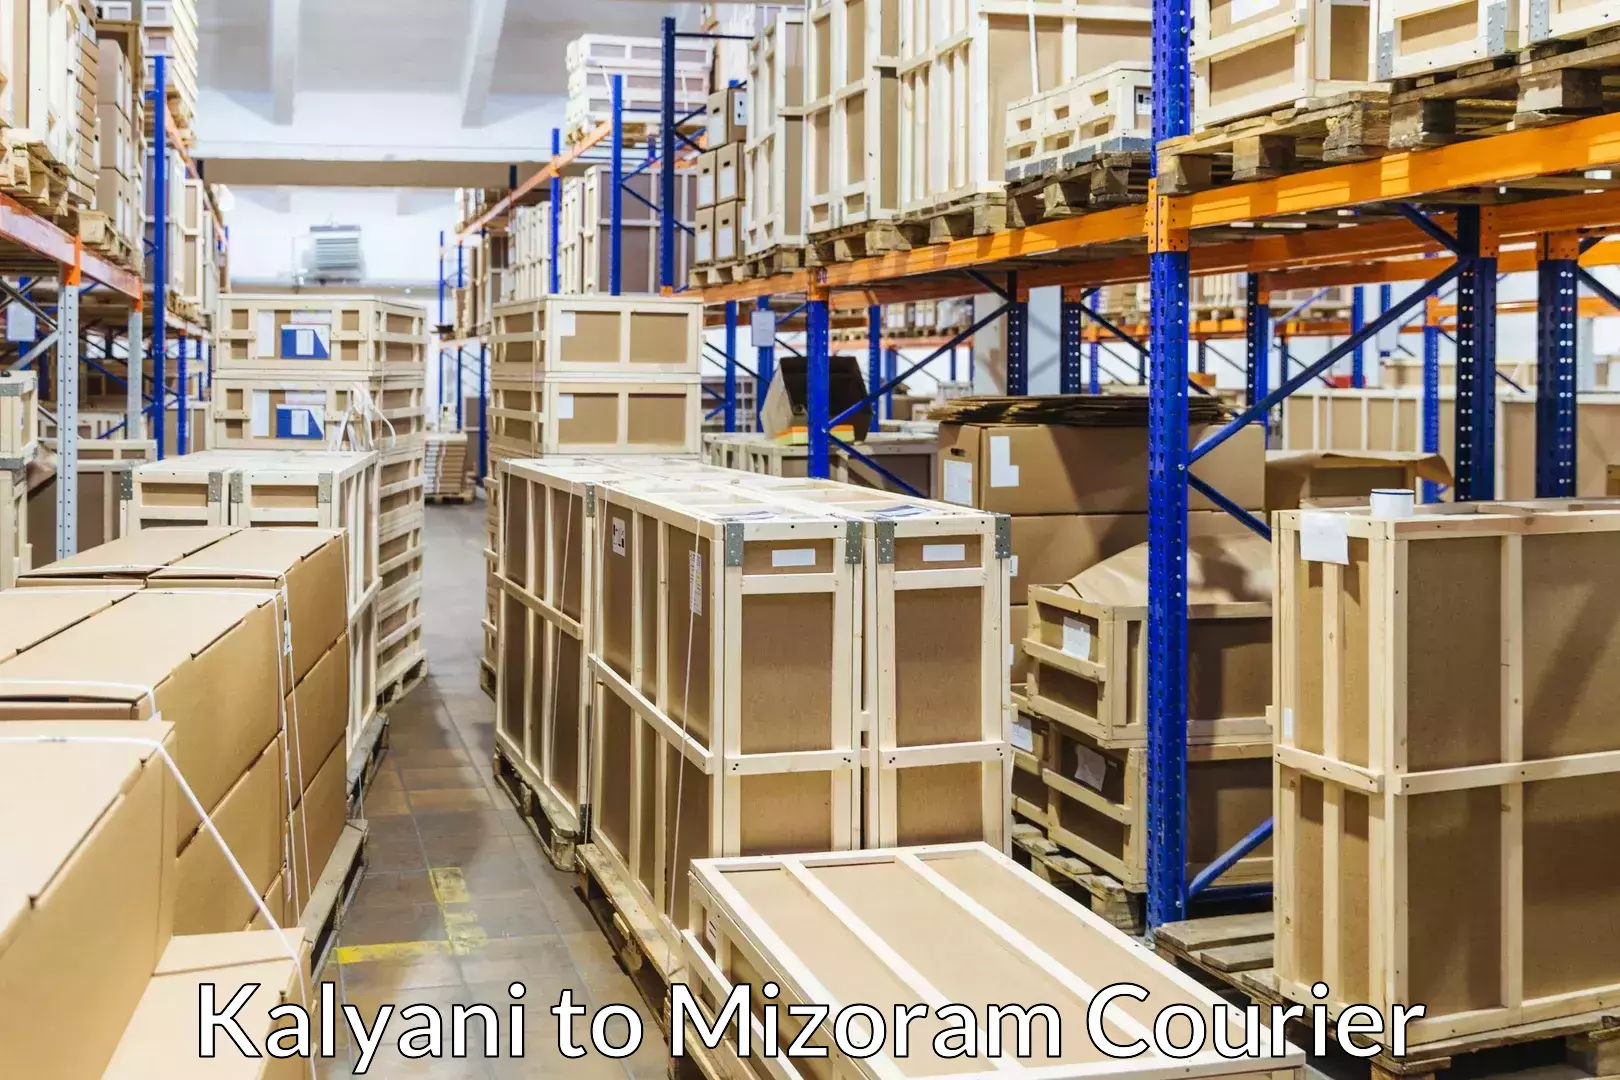 Furniture moving assistance Kalyani to Mizoram